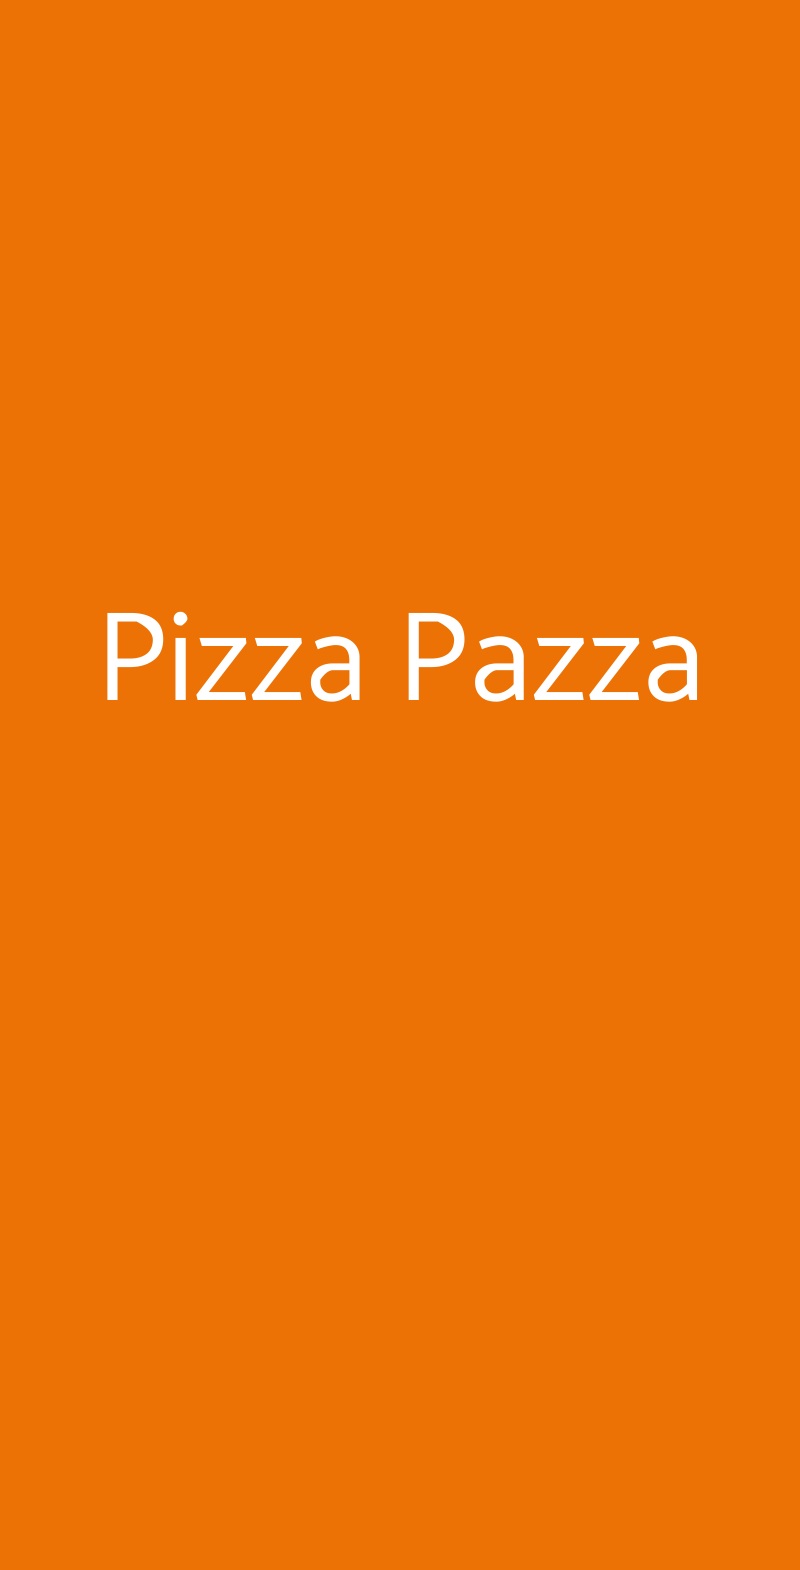 Pizza Pazza Milano menù 1 pagina